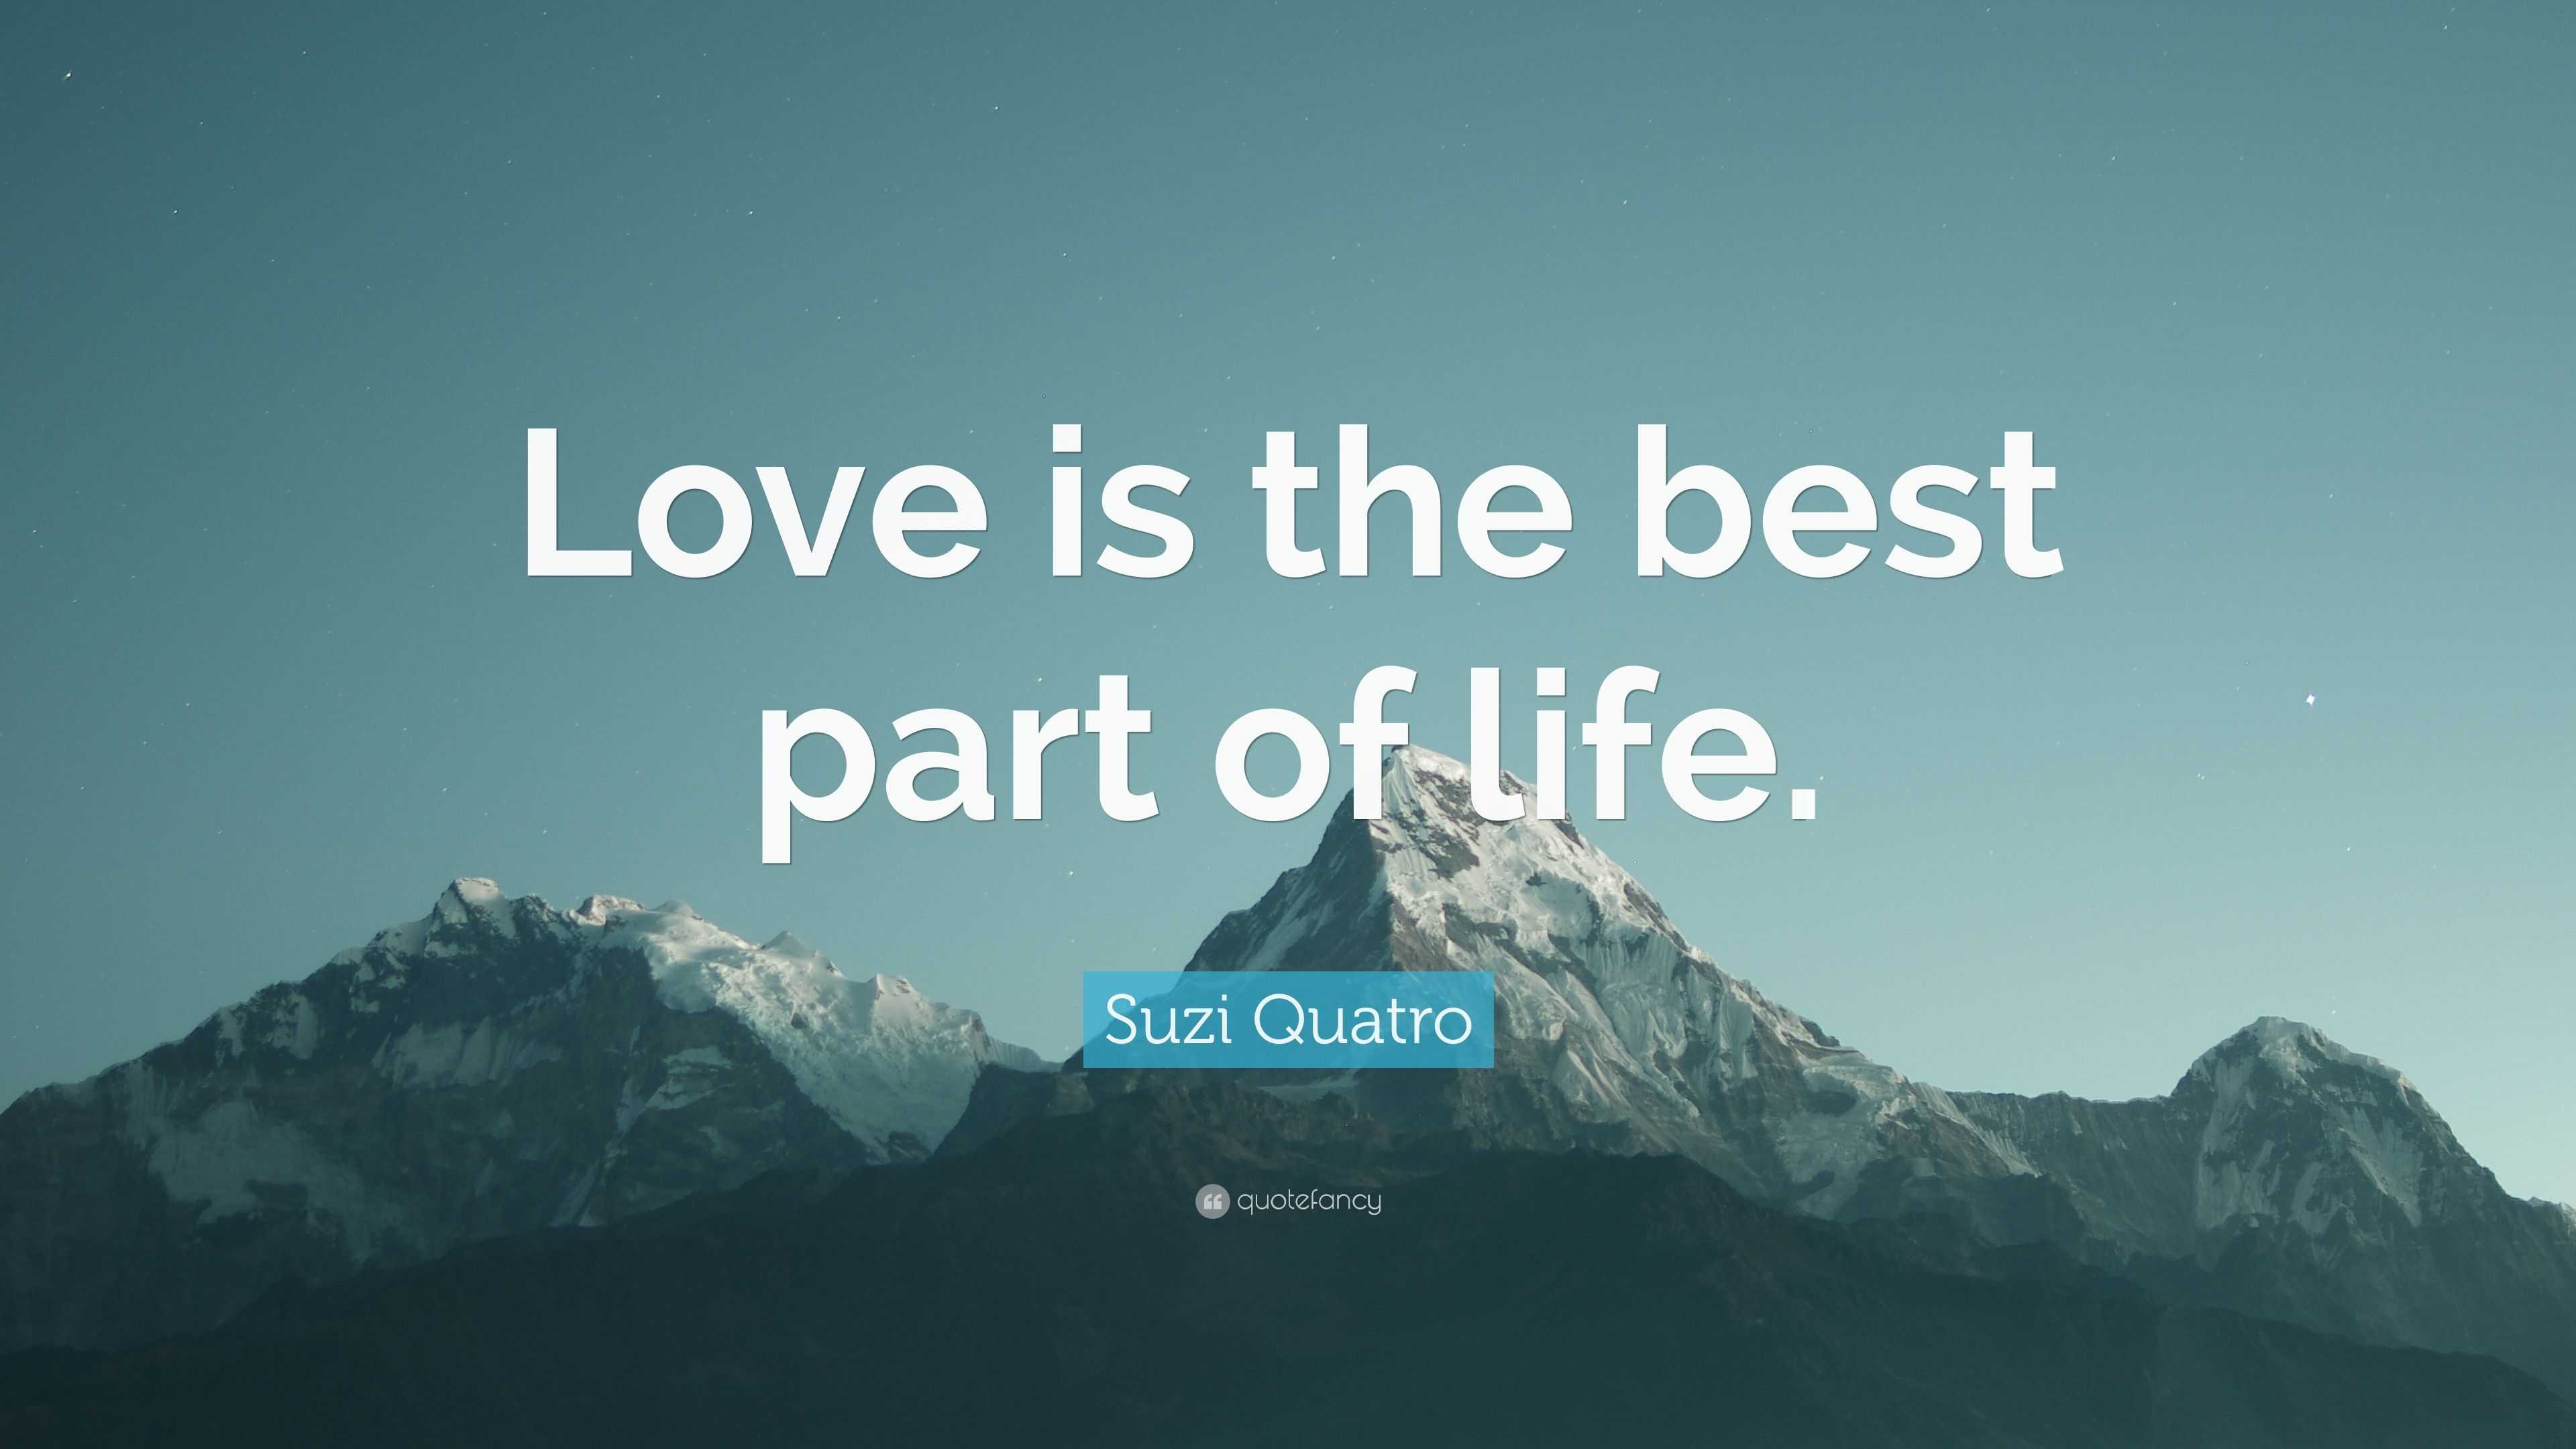 Suzi Quatro Quote “Love is the best part of life ”